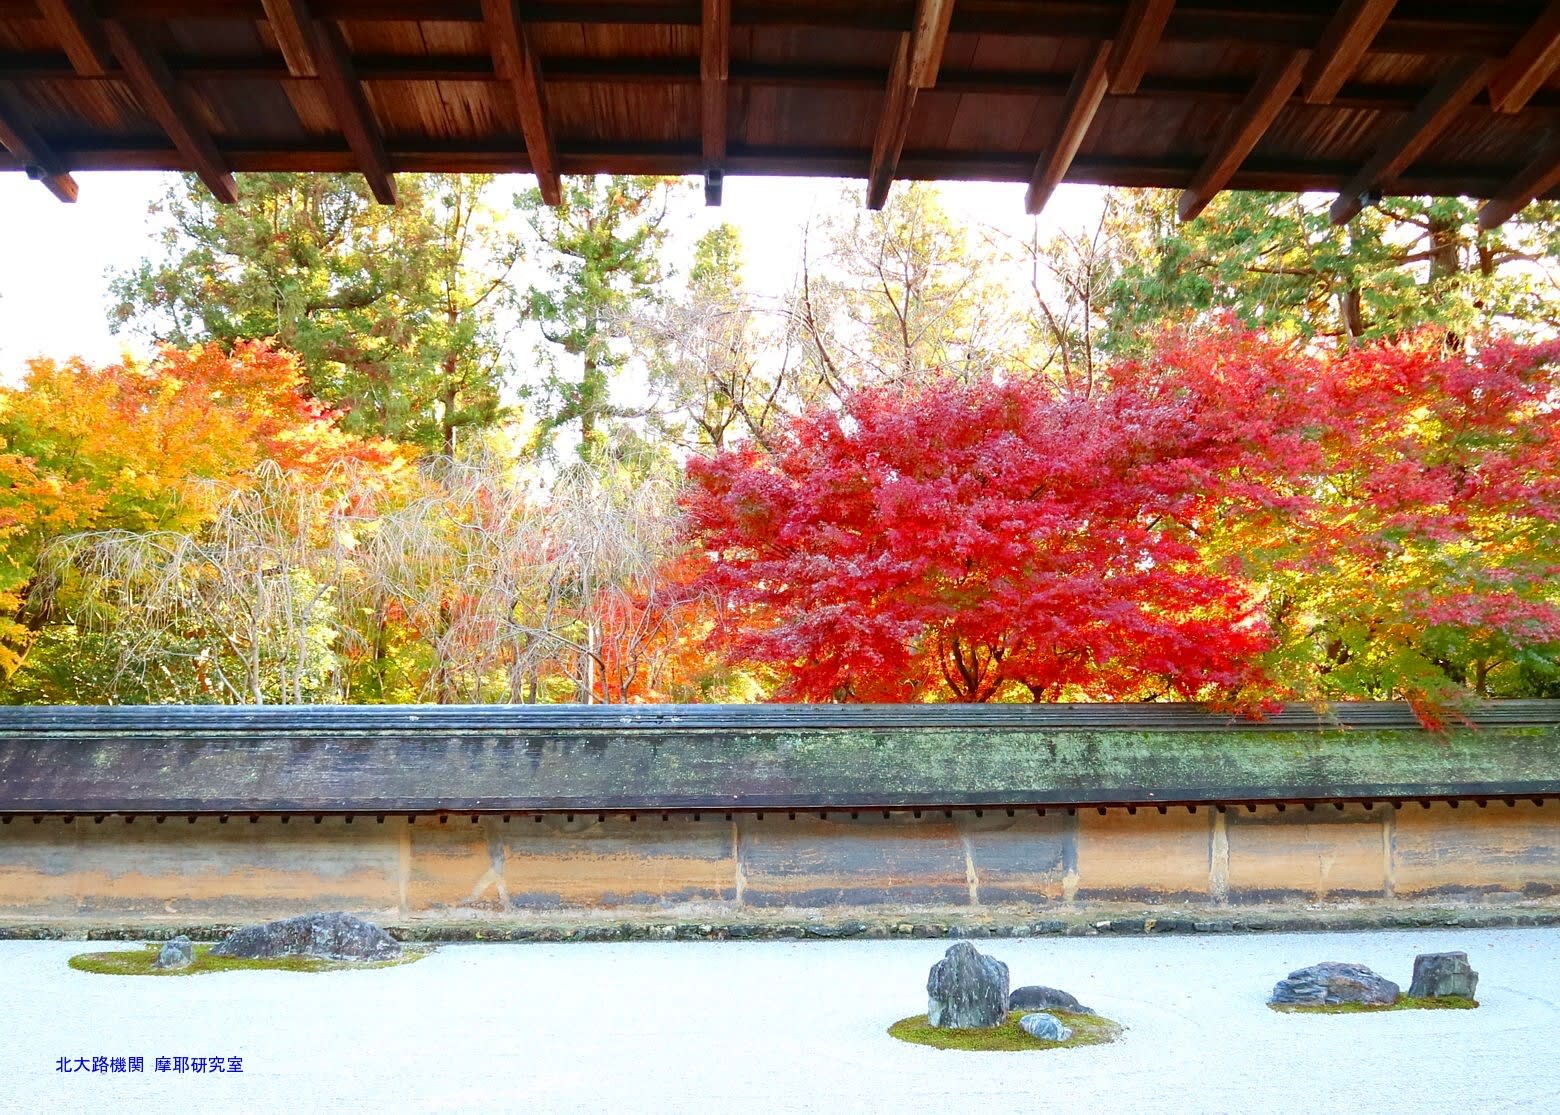 京都幕間旅情 龍安寺方丈庭園 紅葉の七五三の庭と静寂の虎の子渡しの庭に視る日本庭園史 北大路機関